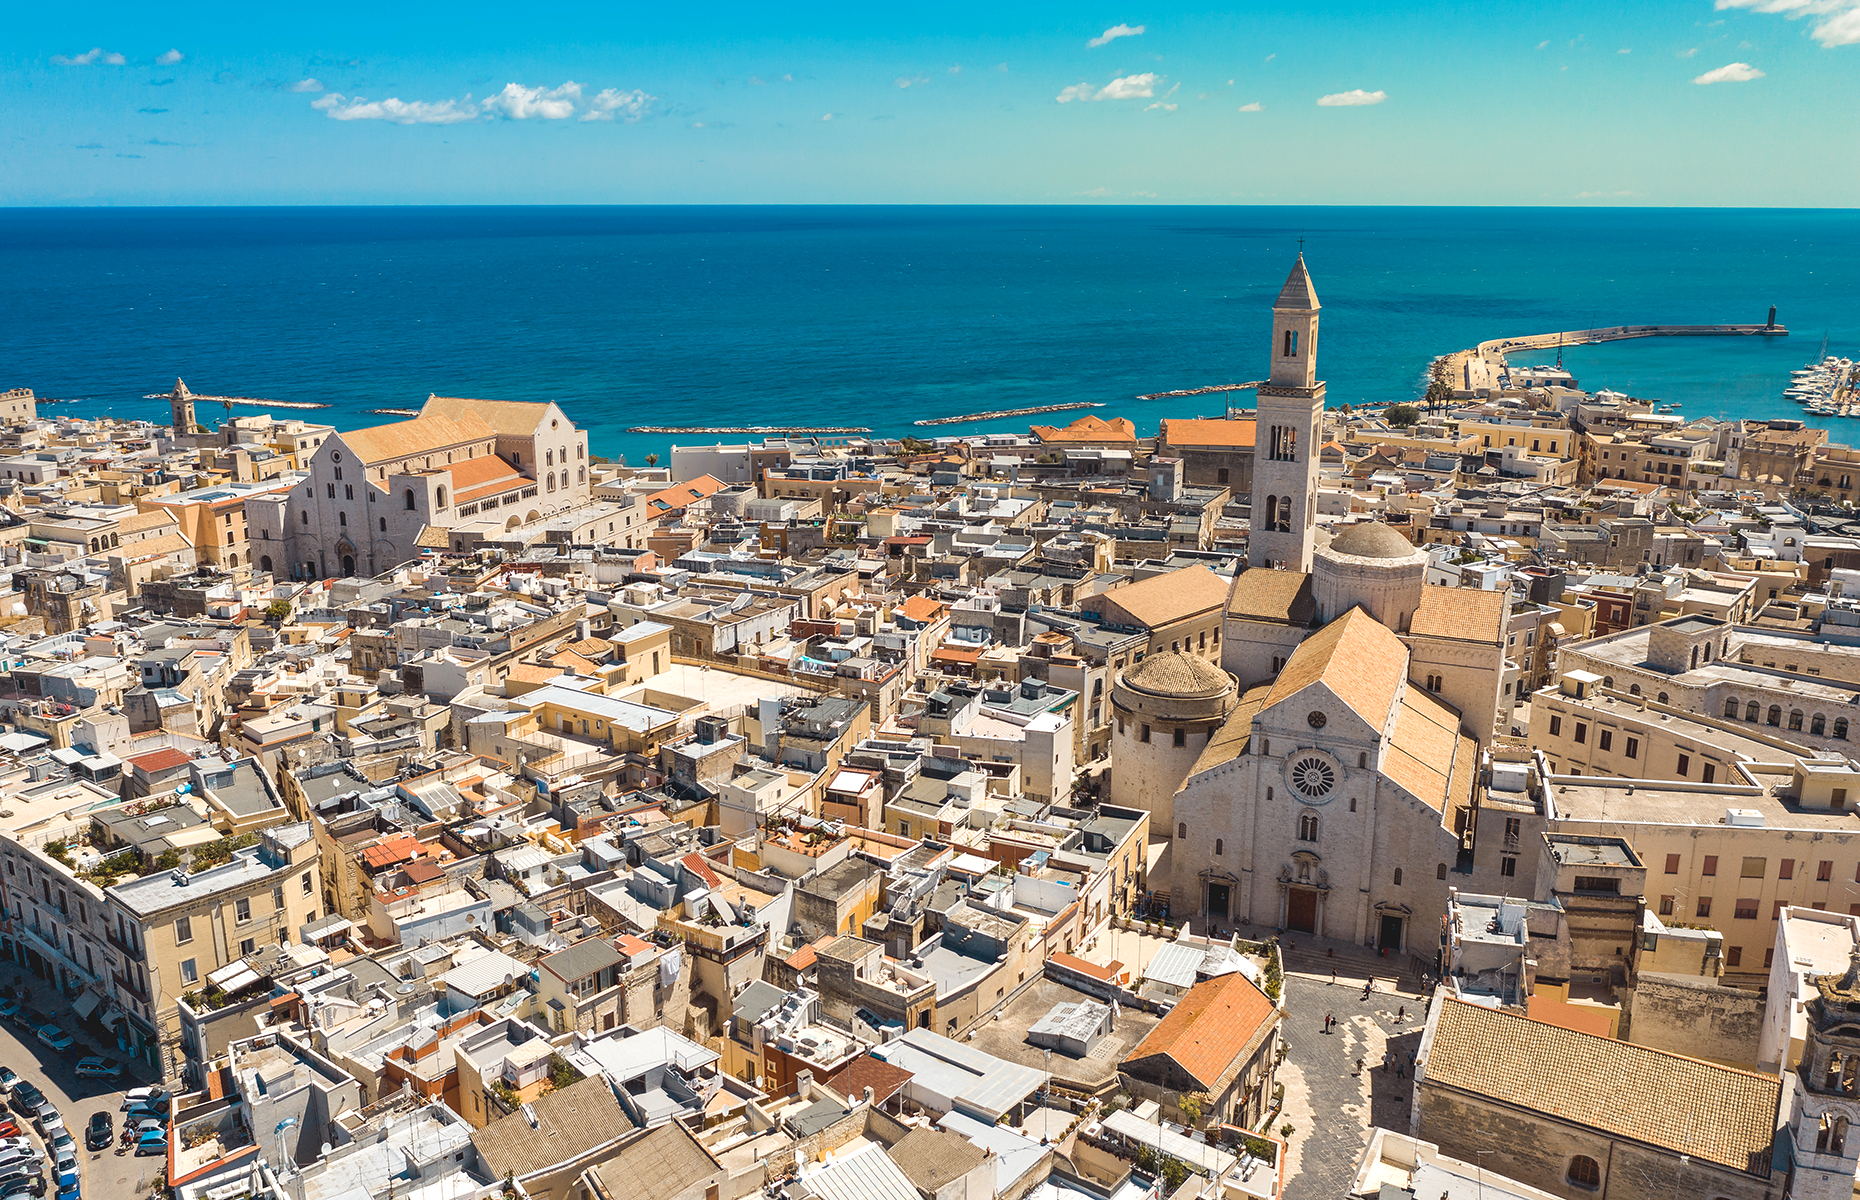 Bari, Puglia, Italy. (Image: Fabio Dell/Shutterstock)